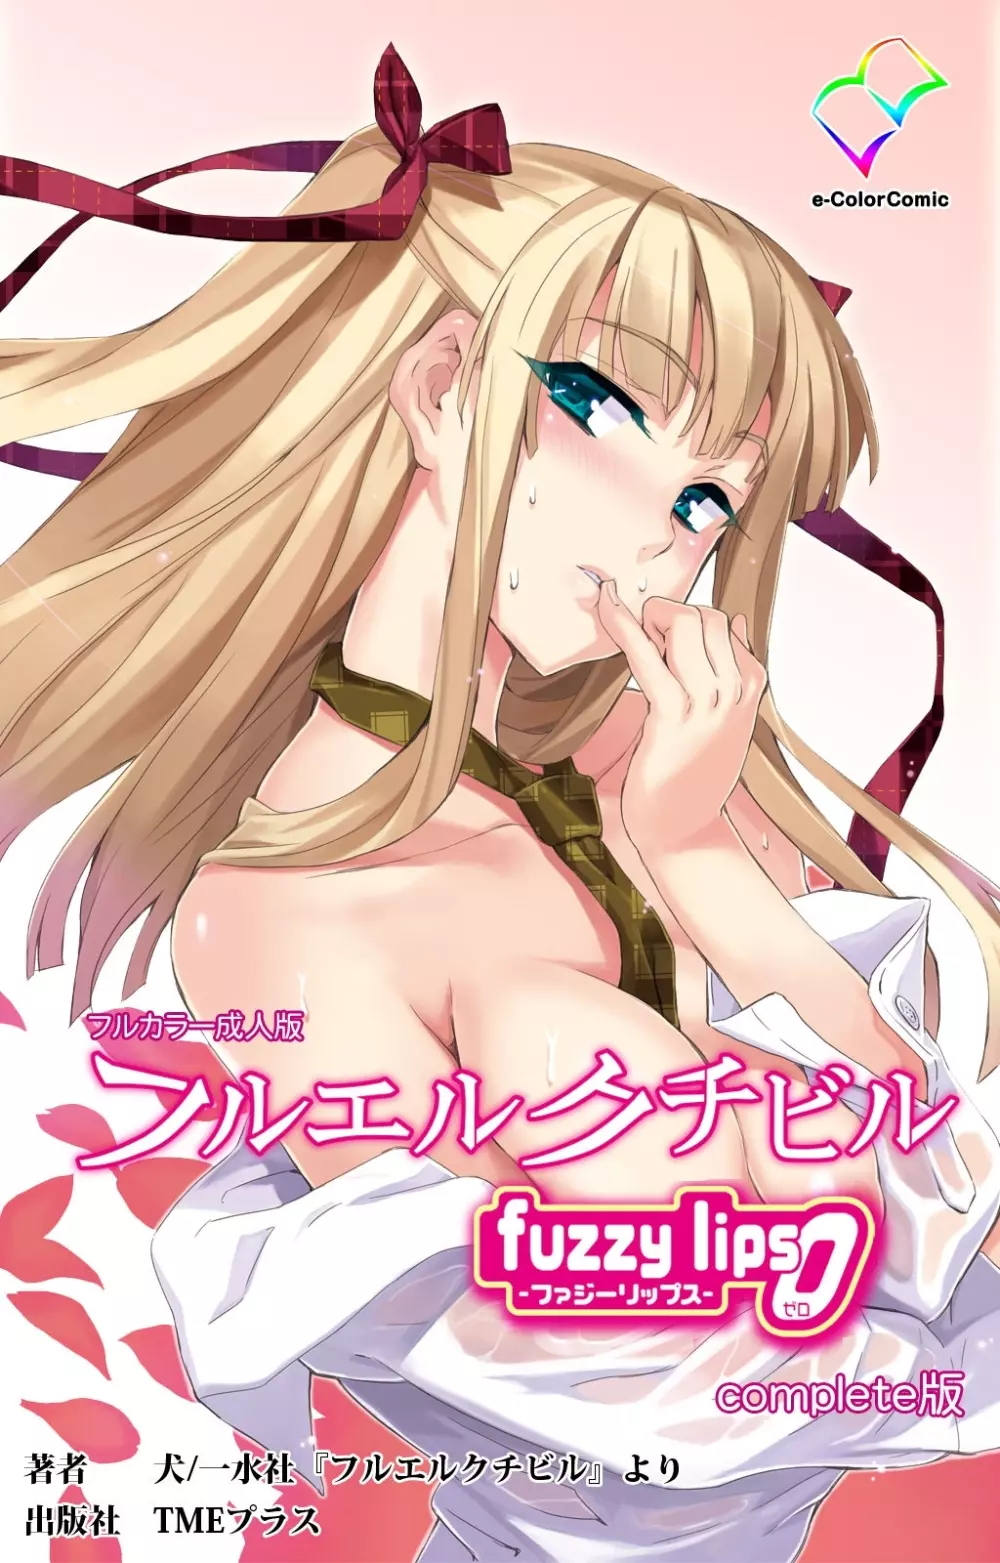 【フルカラー成人版】 フルエルクチビル fuzzy lips0 Complete版